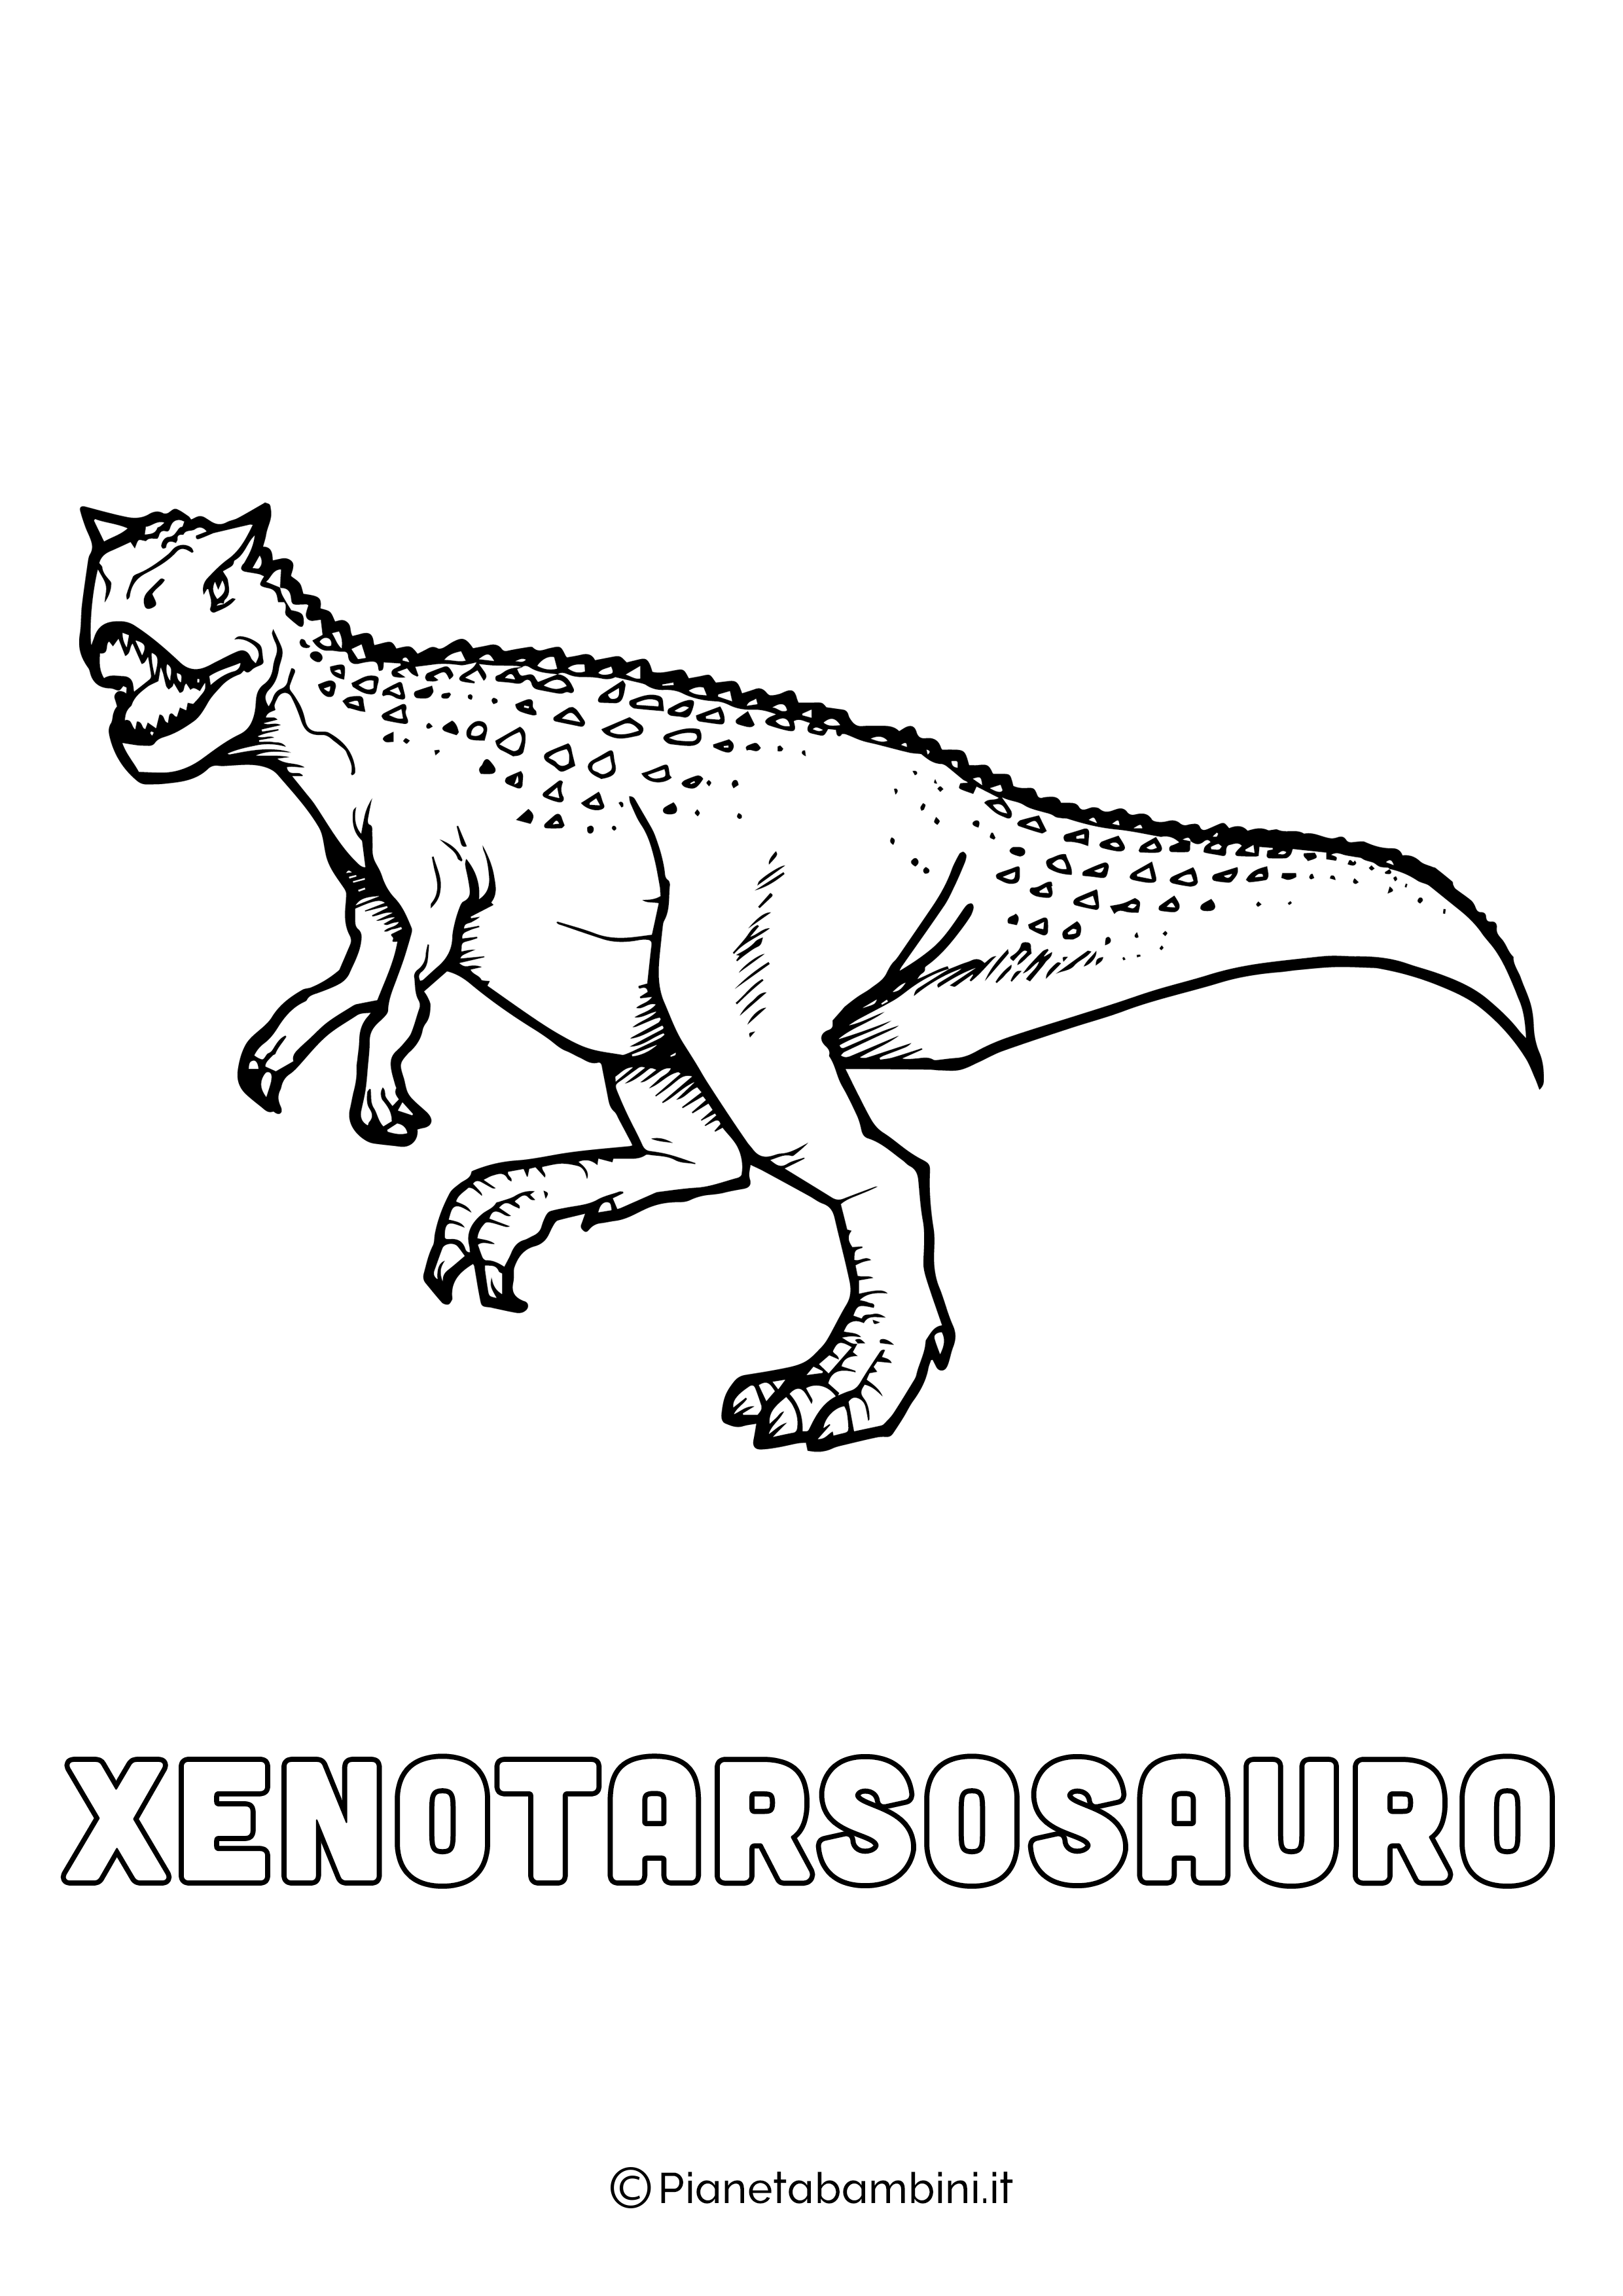 Dinosauro Xenotarsosauro da colorare